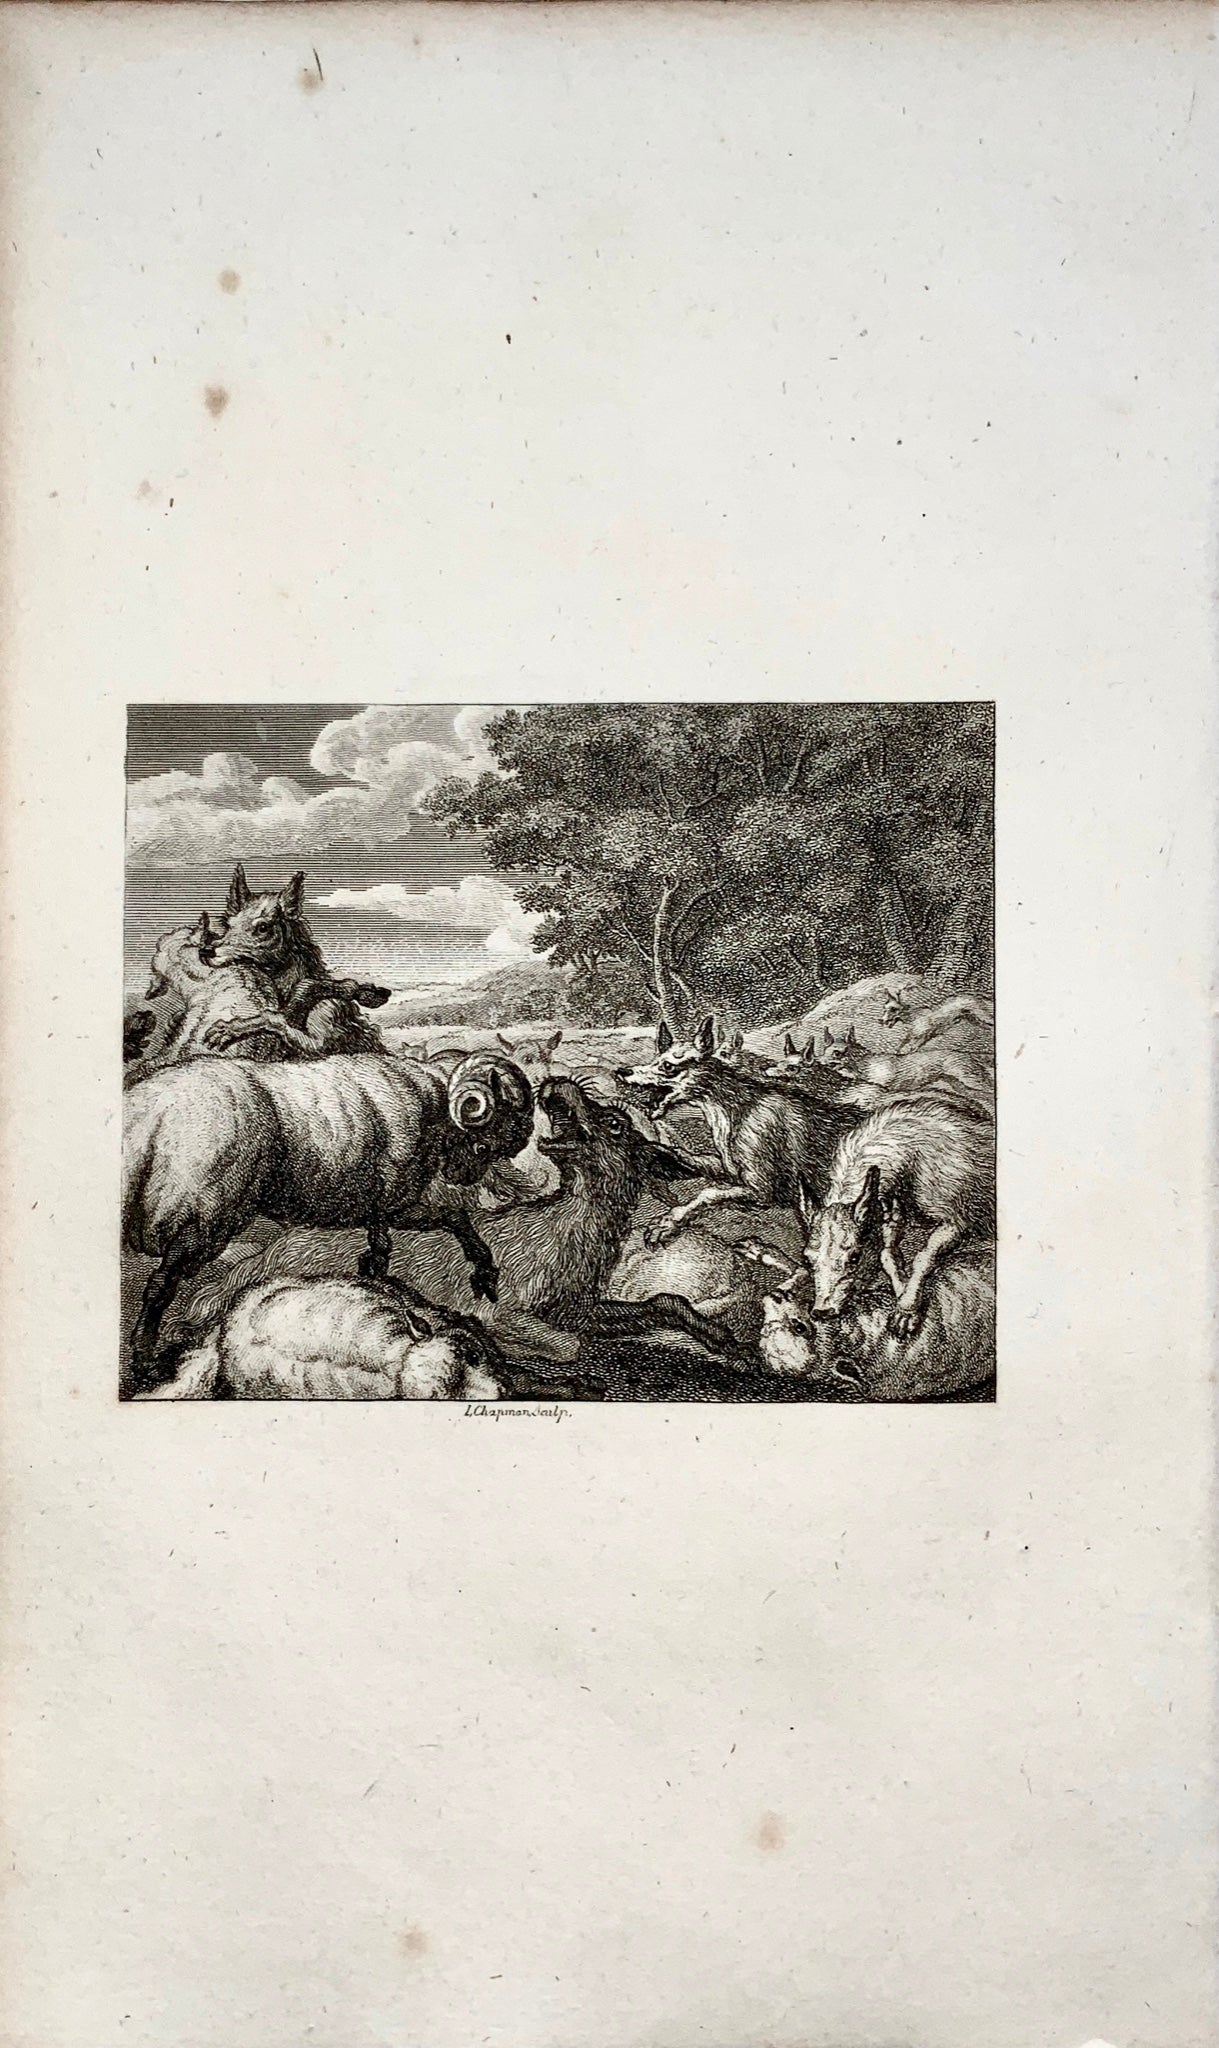 1780 vers. L. Chapmann sclp - Les loups et le mouton - gravure sur cuivre - Fable